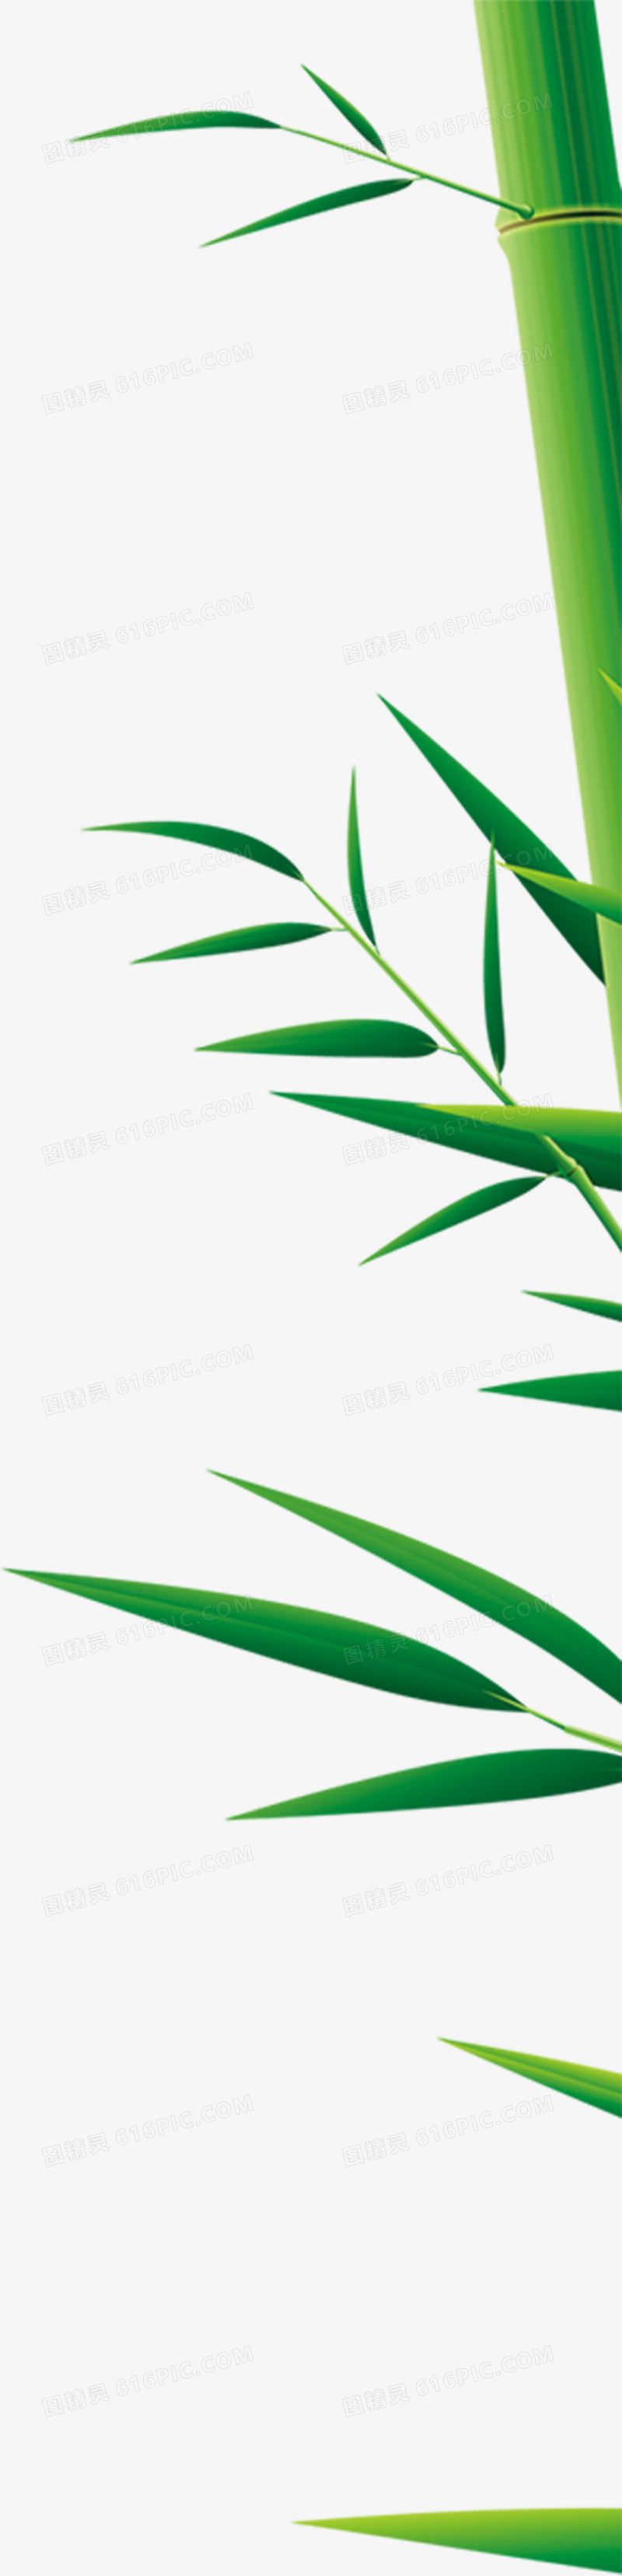 创意合成手绘质感绿色的竹子效果